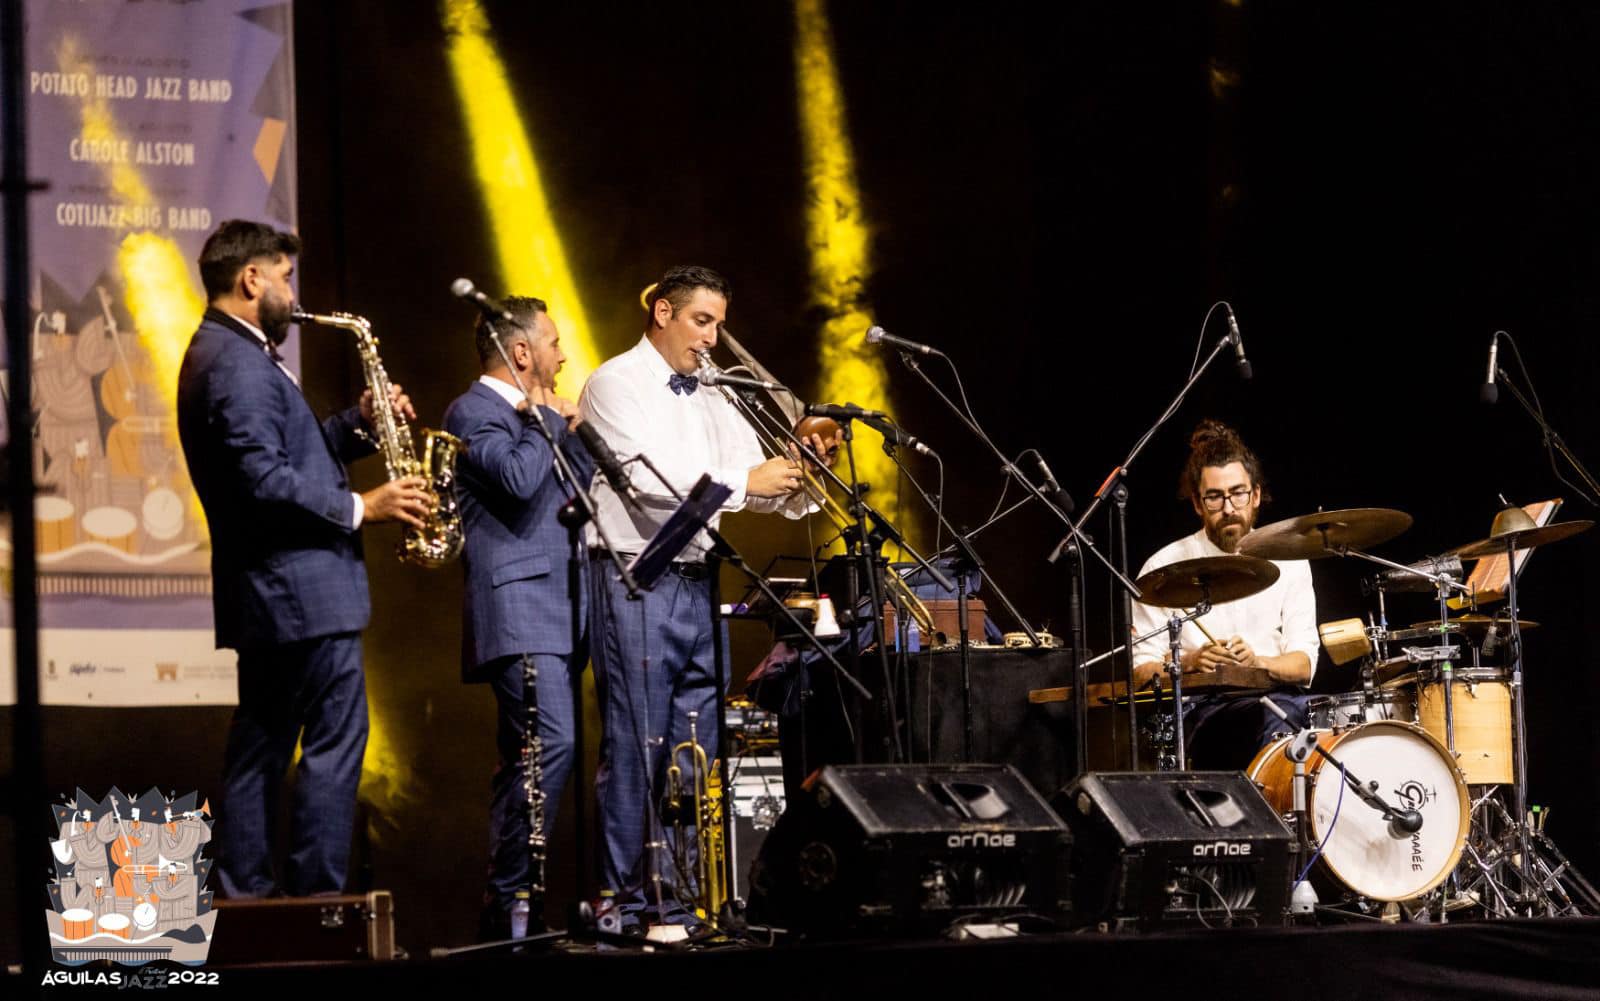 Arranca la segunda edición del Águilas Jazz Festival con la actuación de “Potato Head Jazz Band”